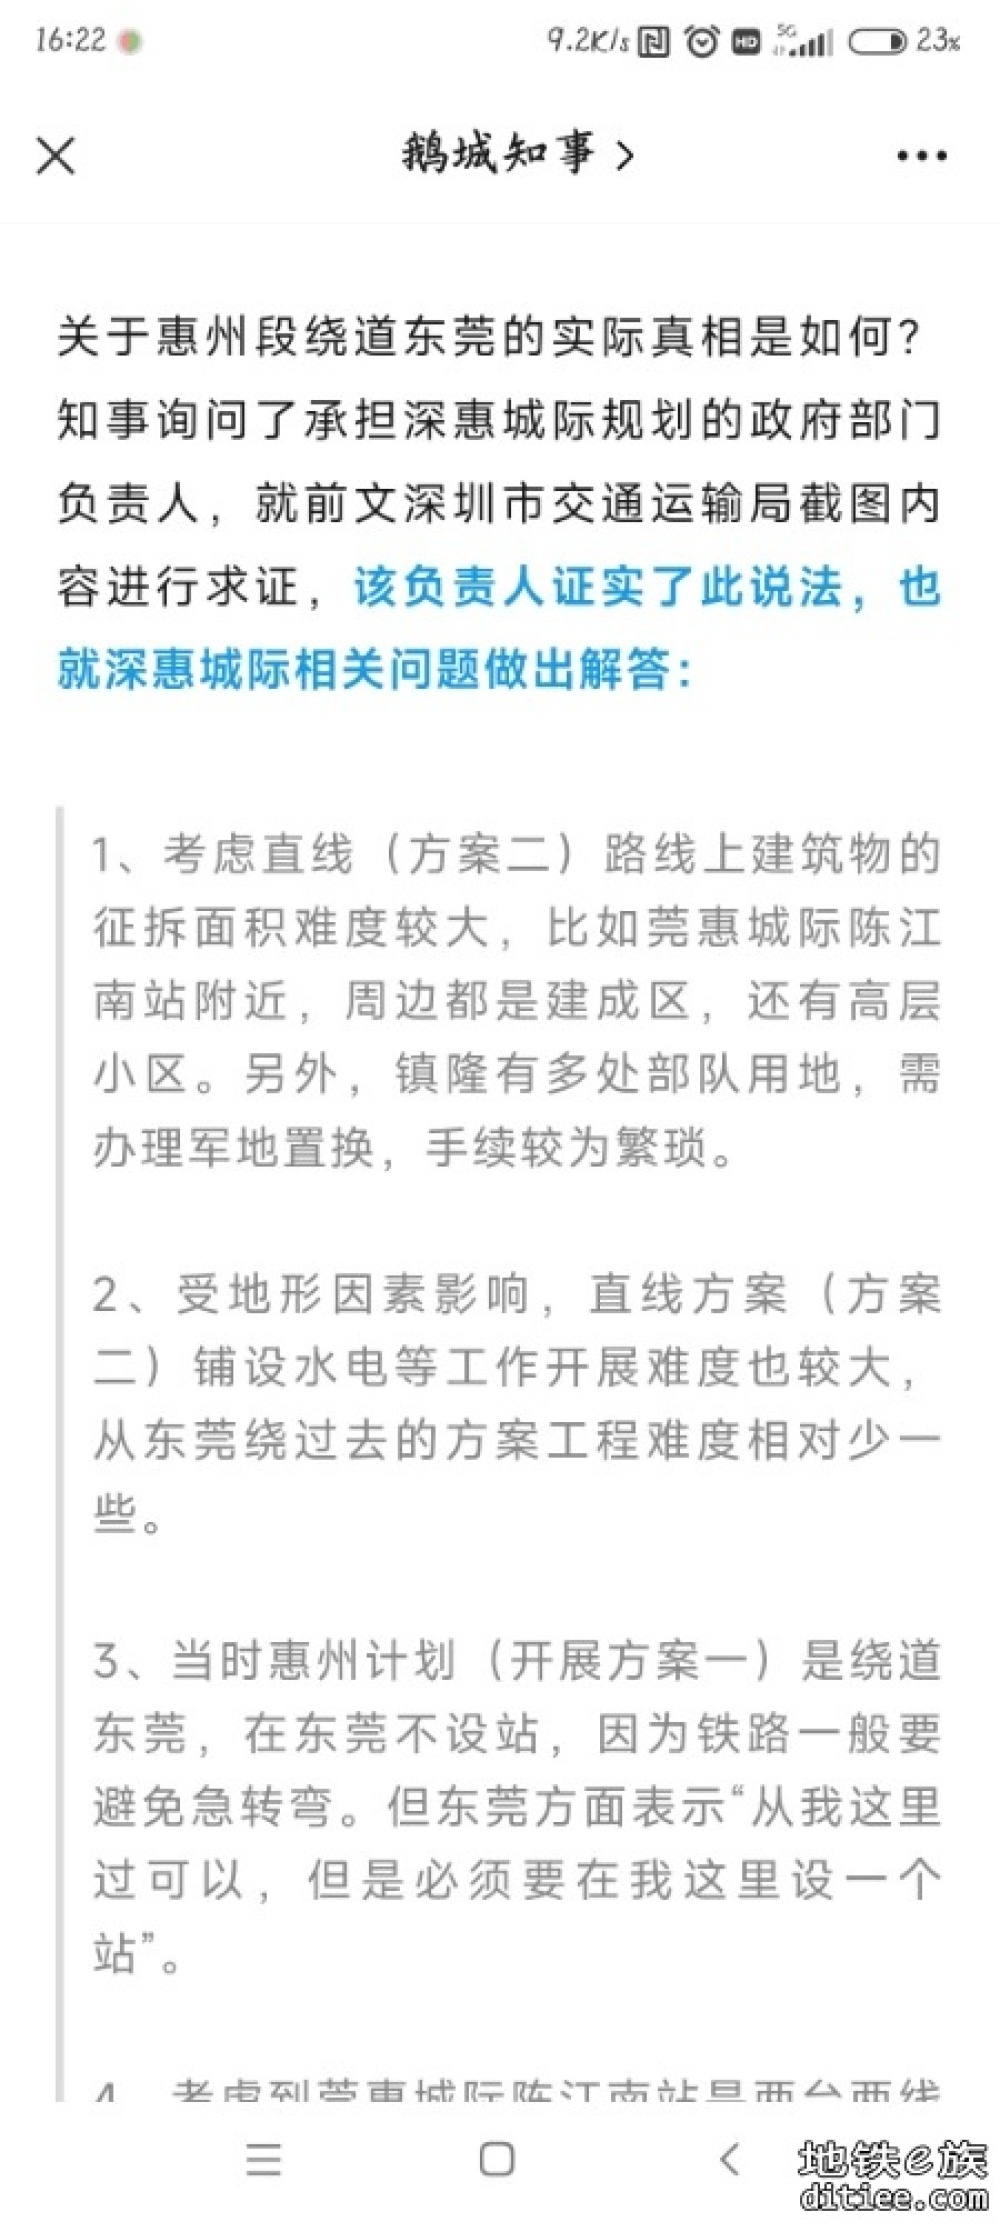 深惠城际惠州段选线方案回复